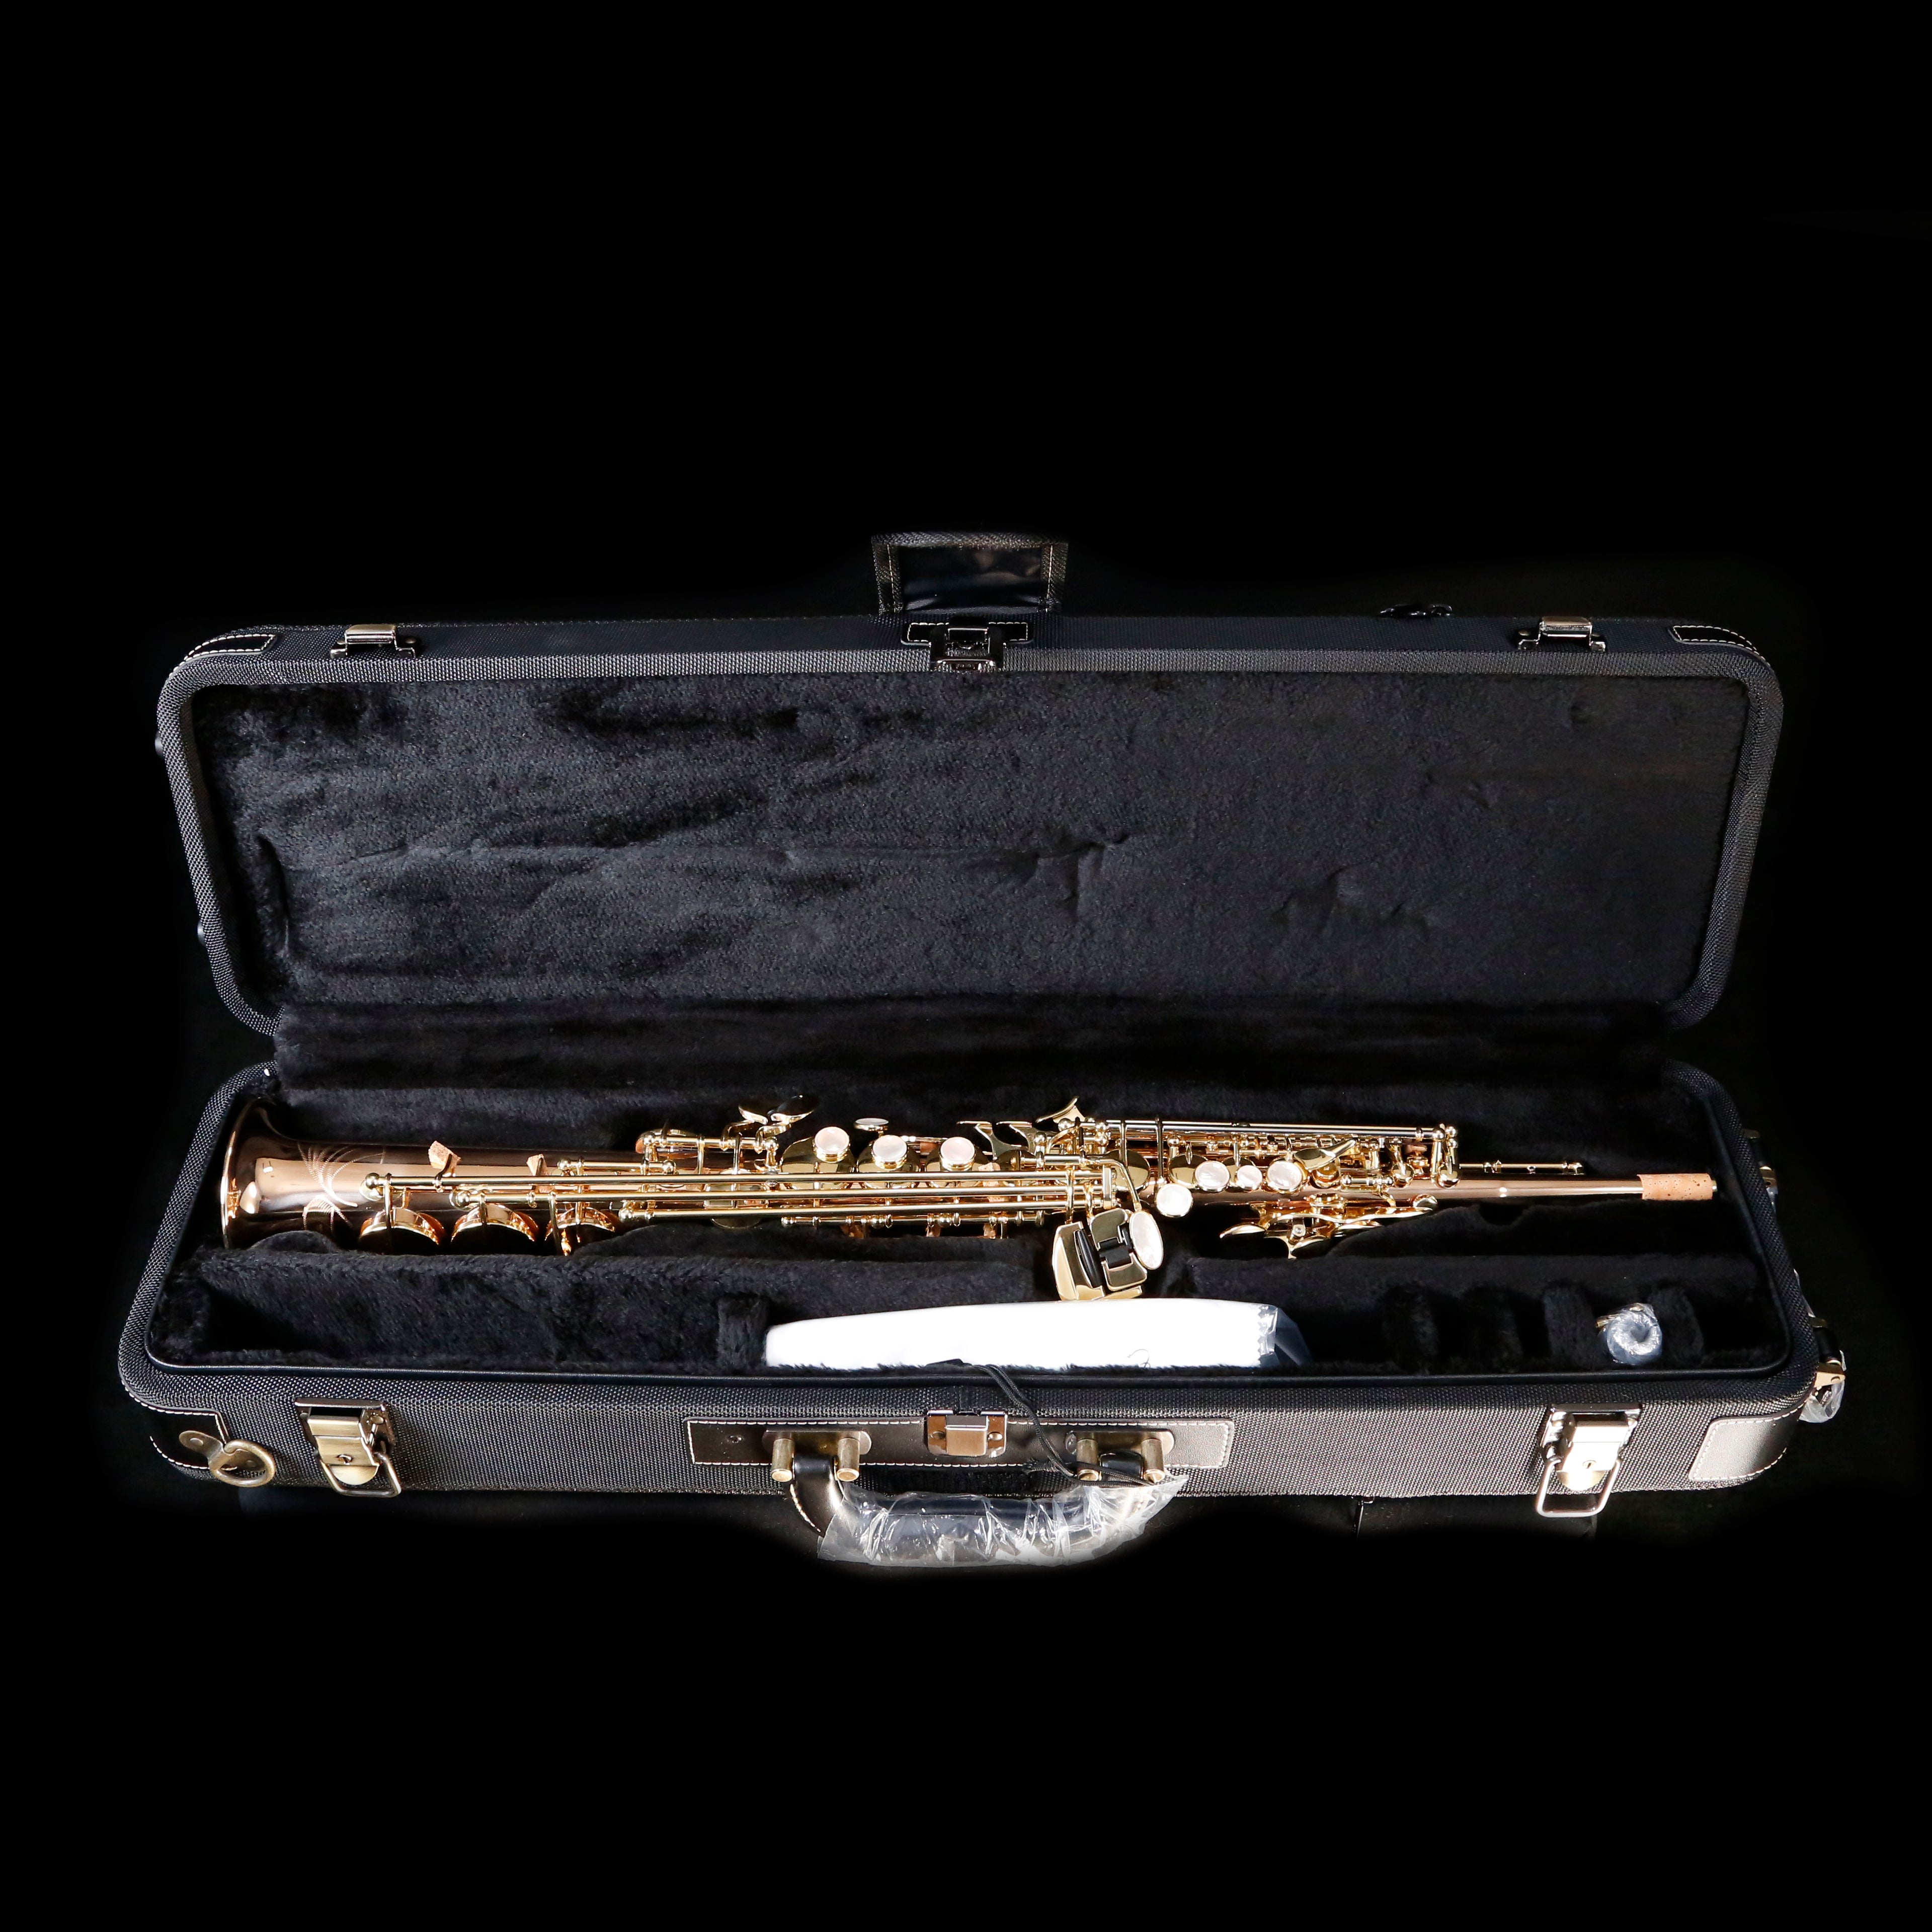 Yanagisawa SWO2 Bb Soprano Saxophone, Bronze, Straight One-Piece Body, High F#